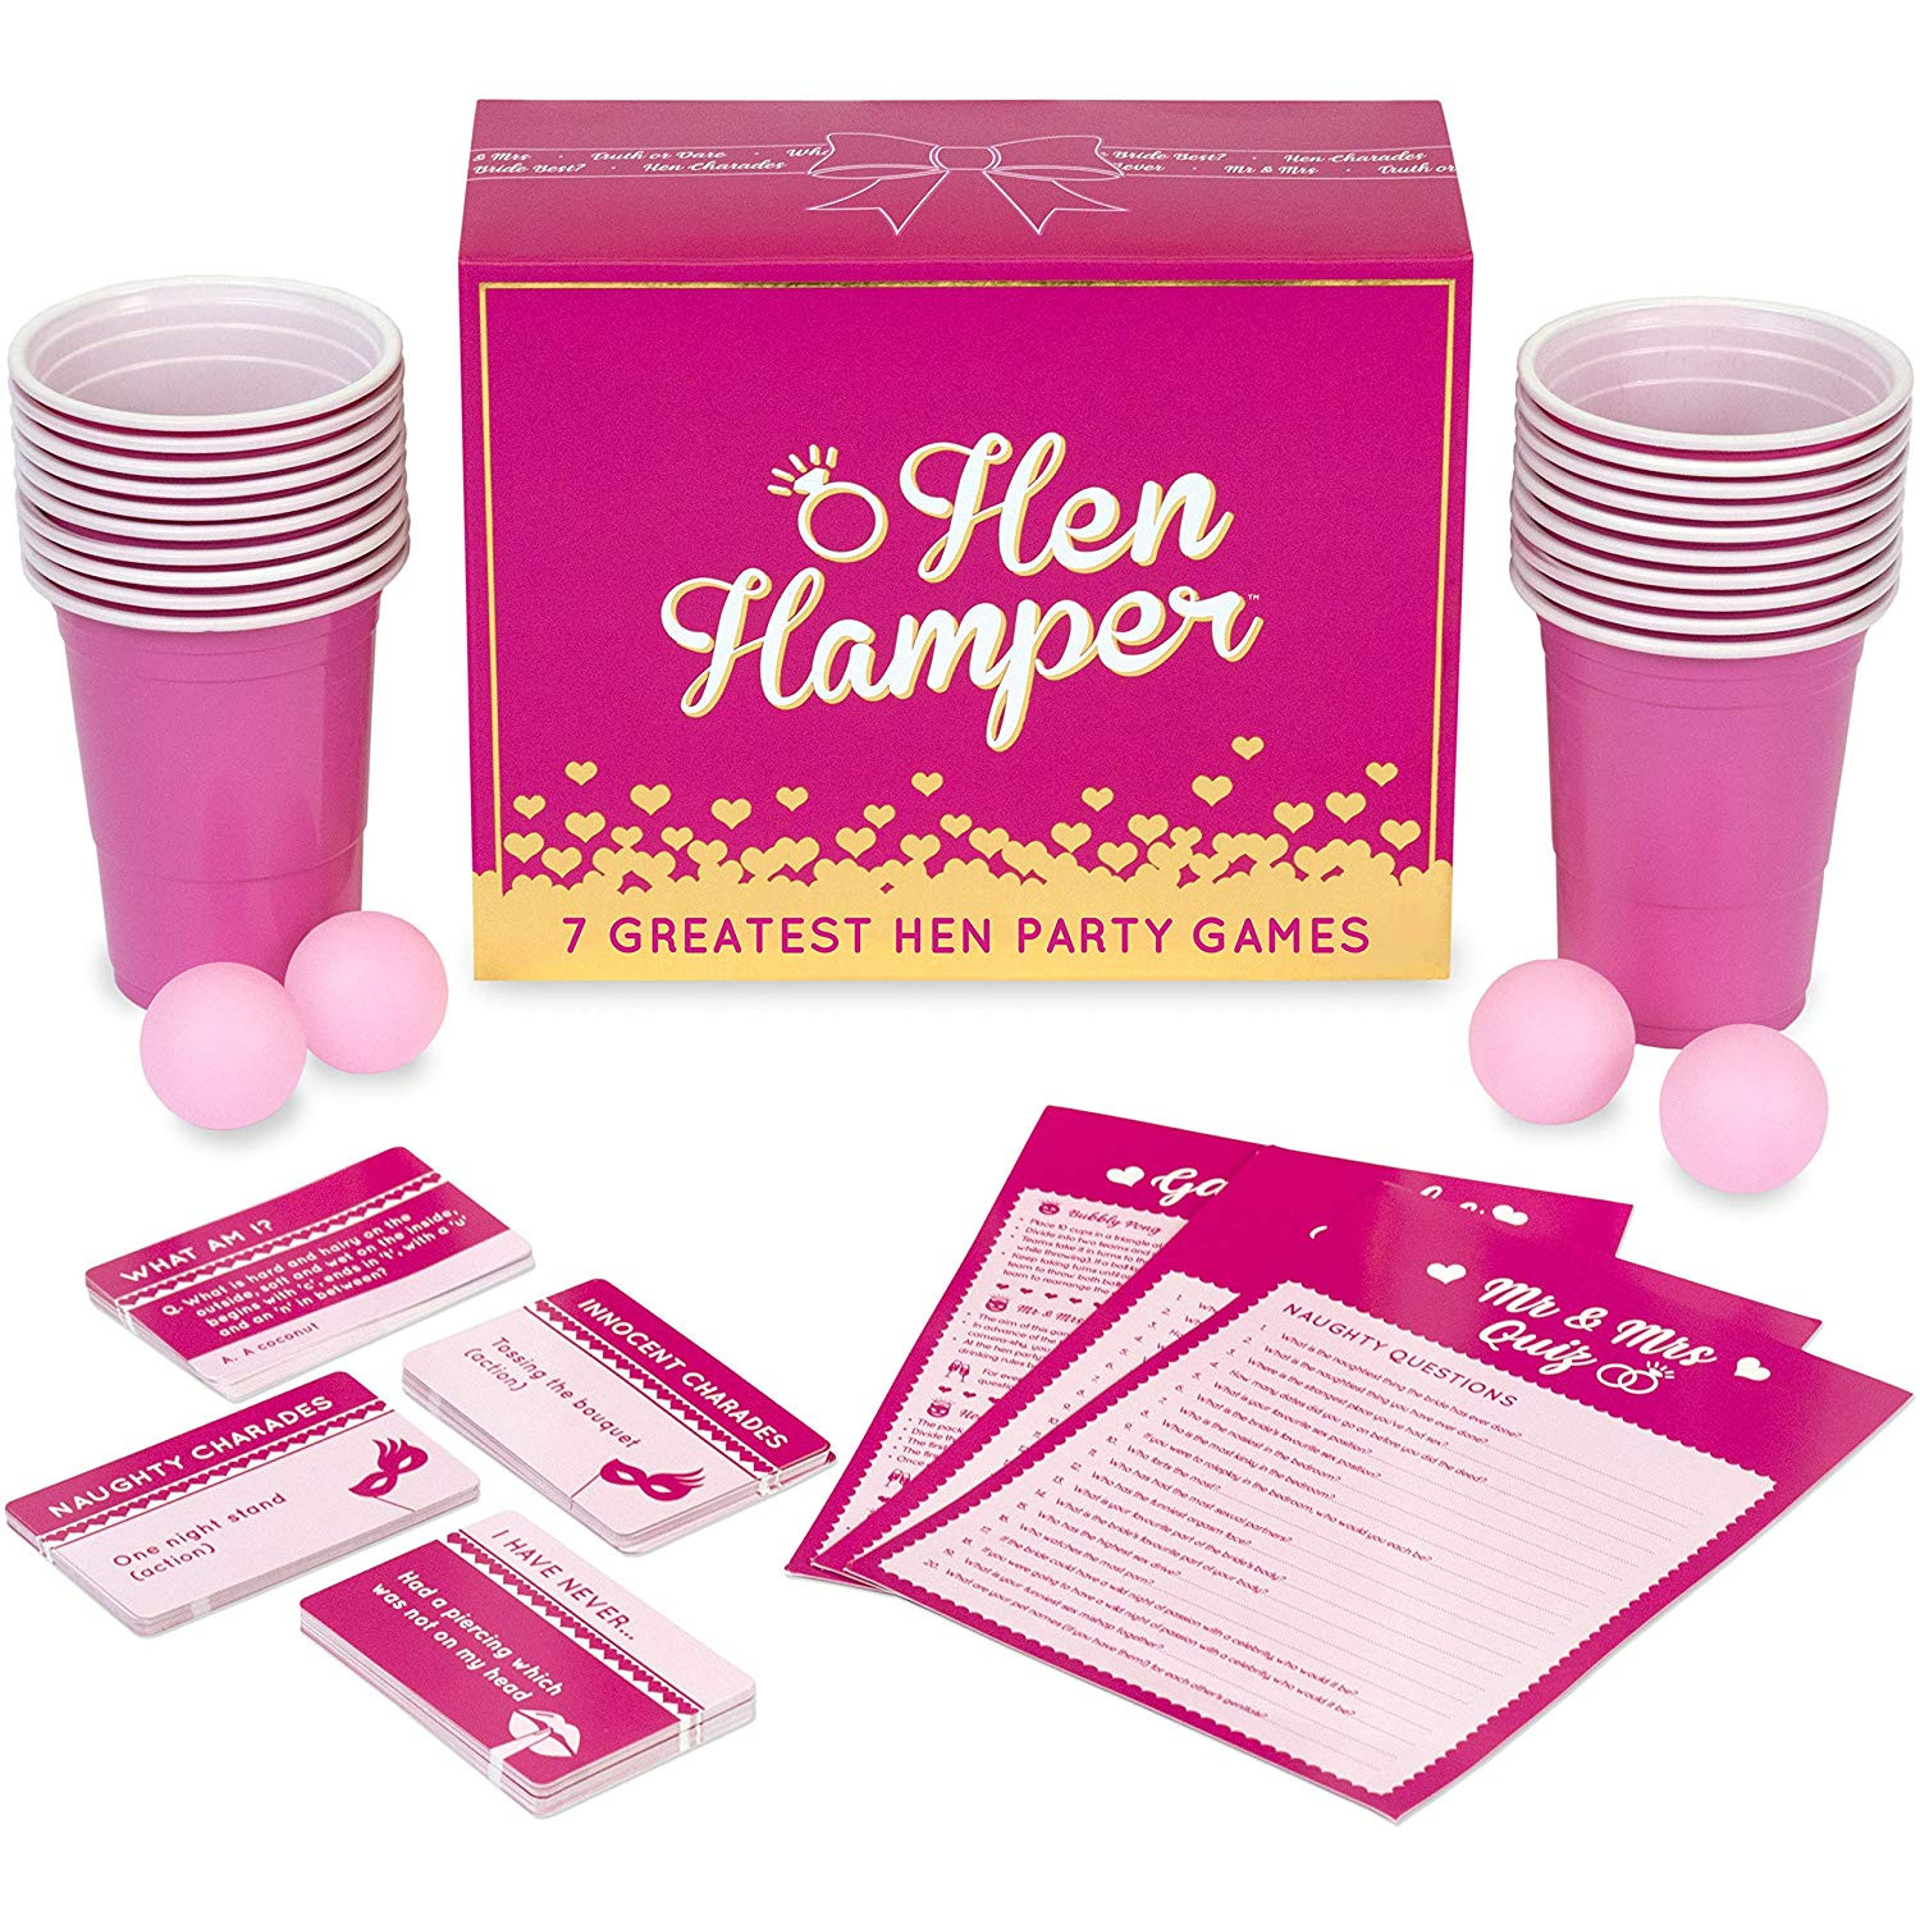 Hen Hamper - 7 Greatest Hen Party Games